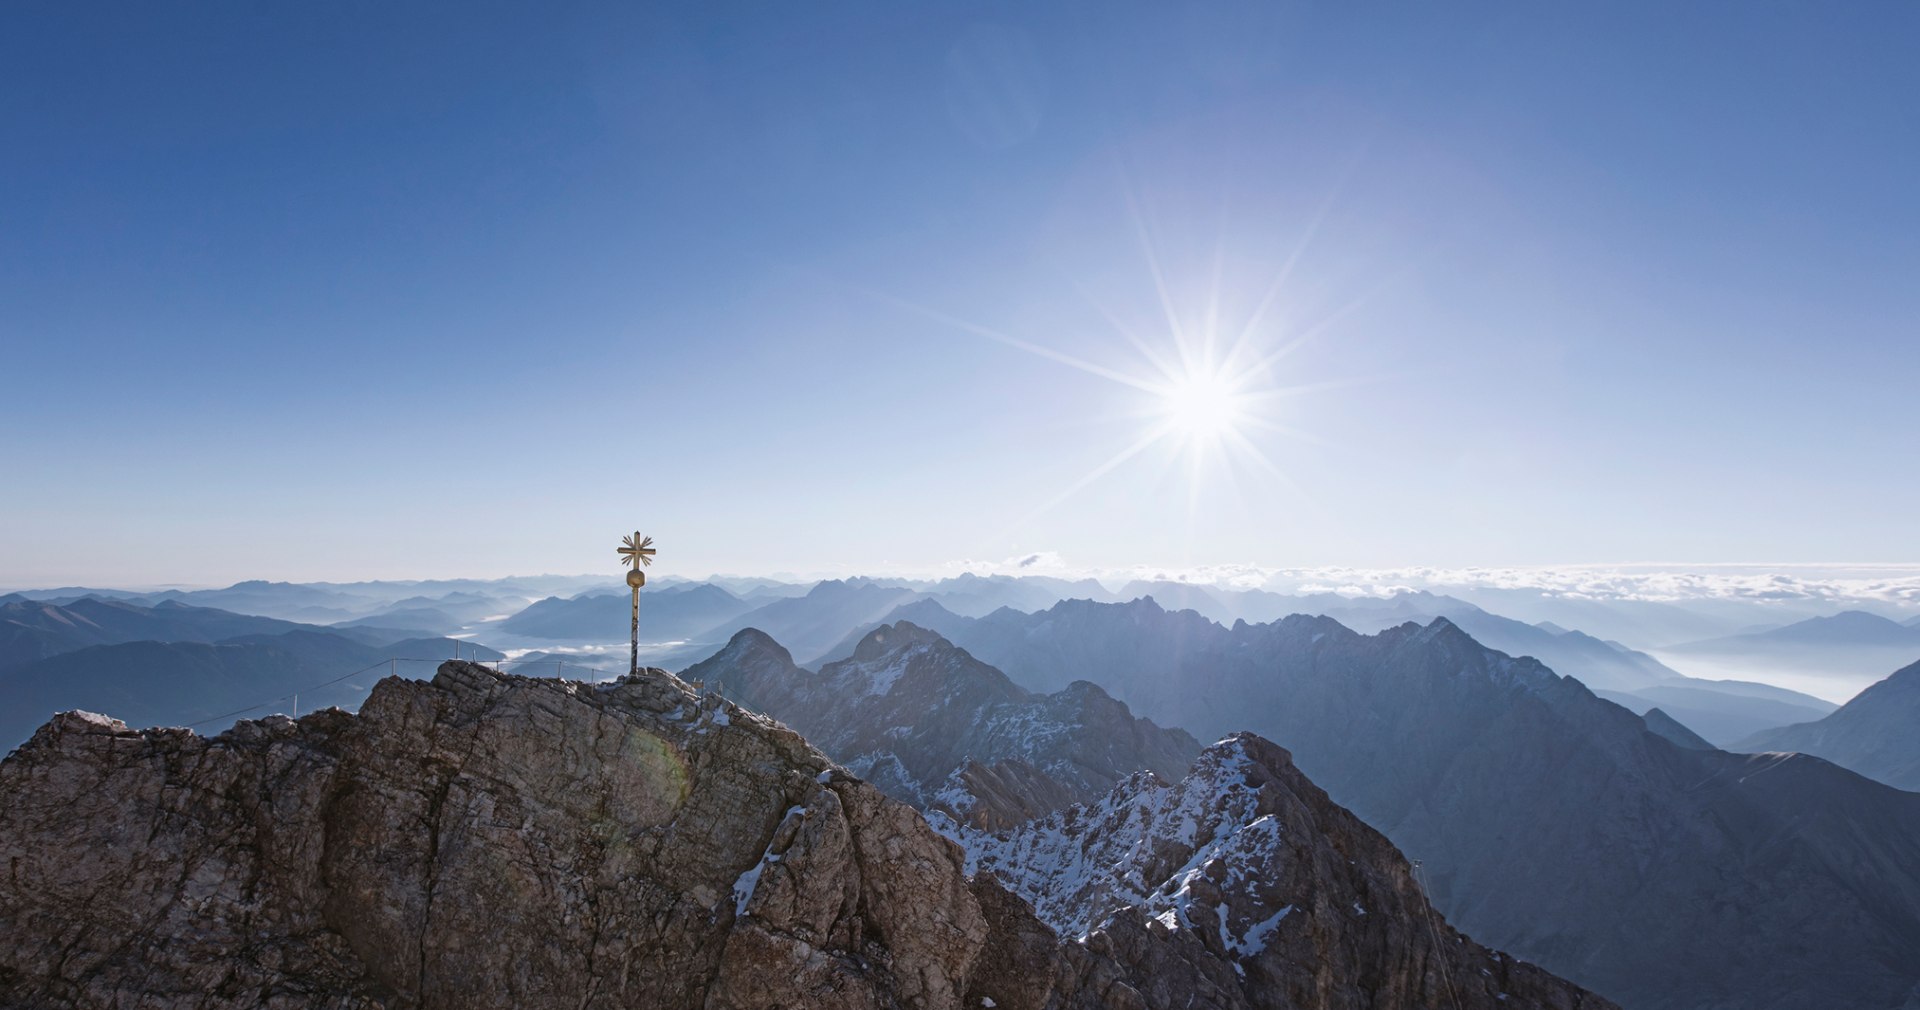 Zugspitze Gipfel mit Sonne, © Bayerische Zugspitzbahn AG, Matthias Fend